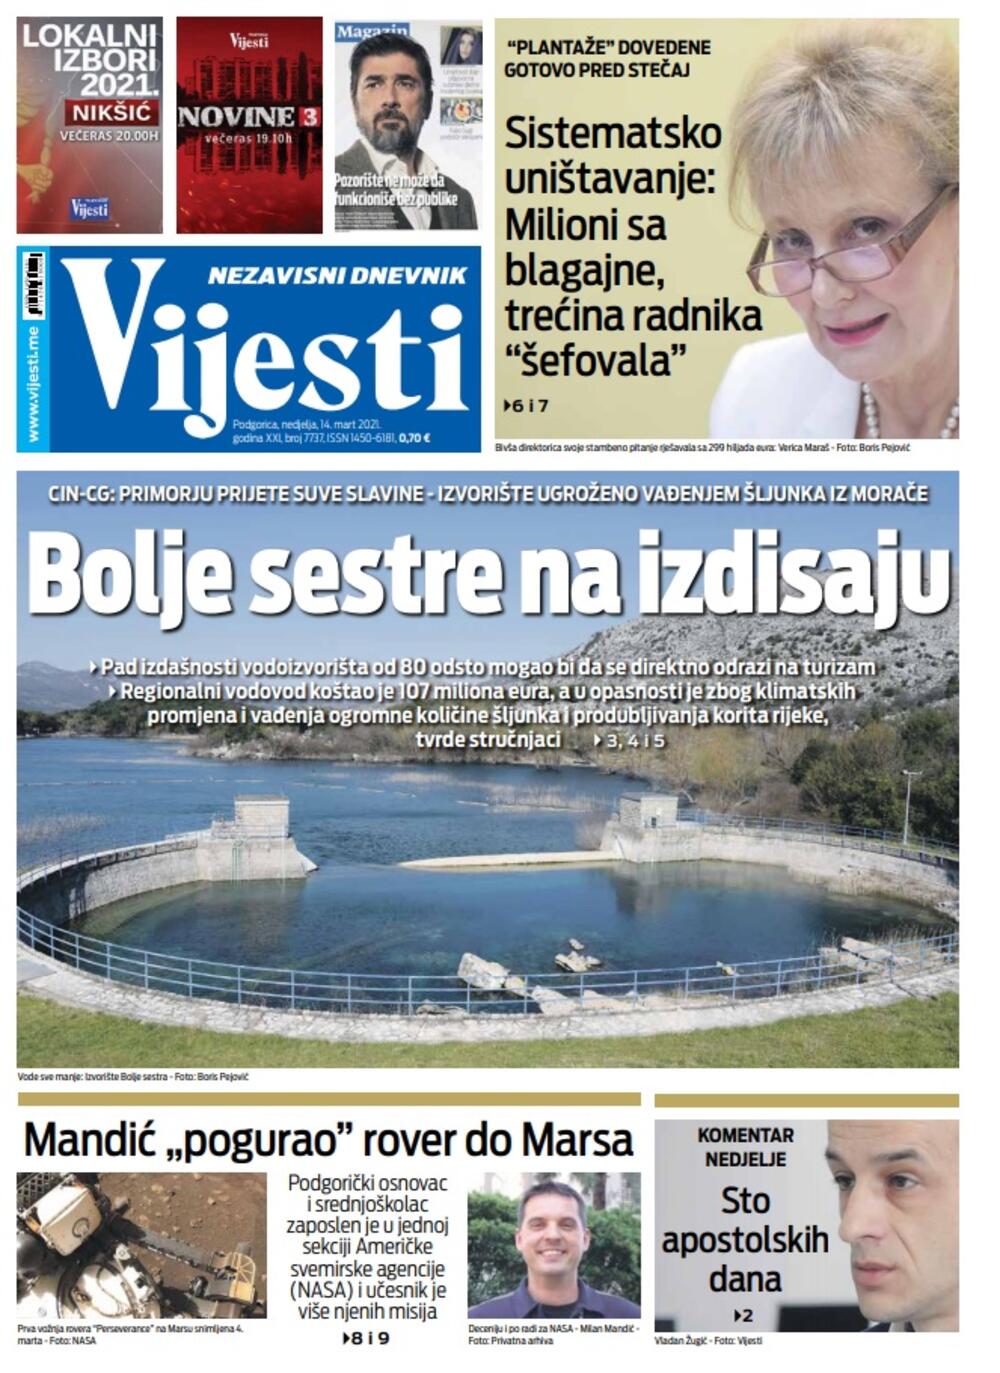 Naslovna strana "Vijesti" za nedjelju 14. mart 2021. godine, Foto: Vijesti